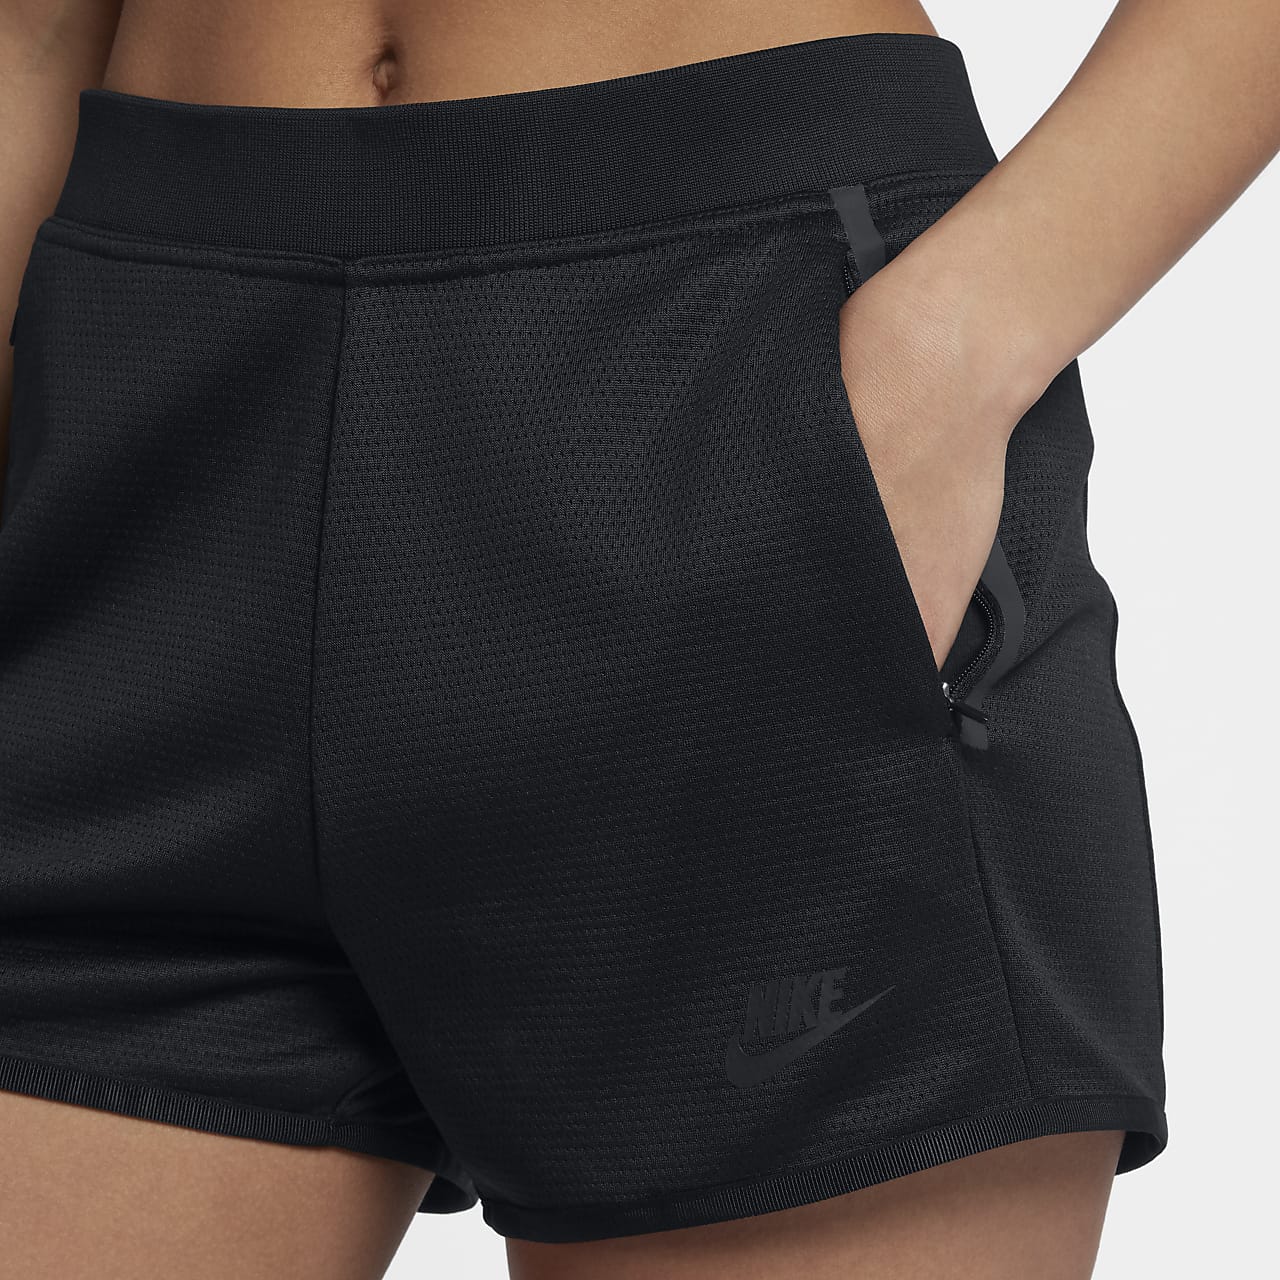 Women's Shorts. Nike CH